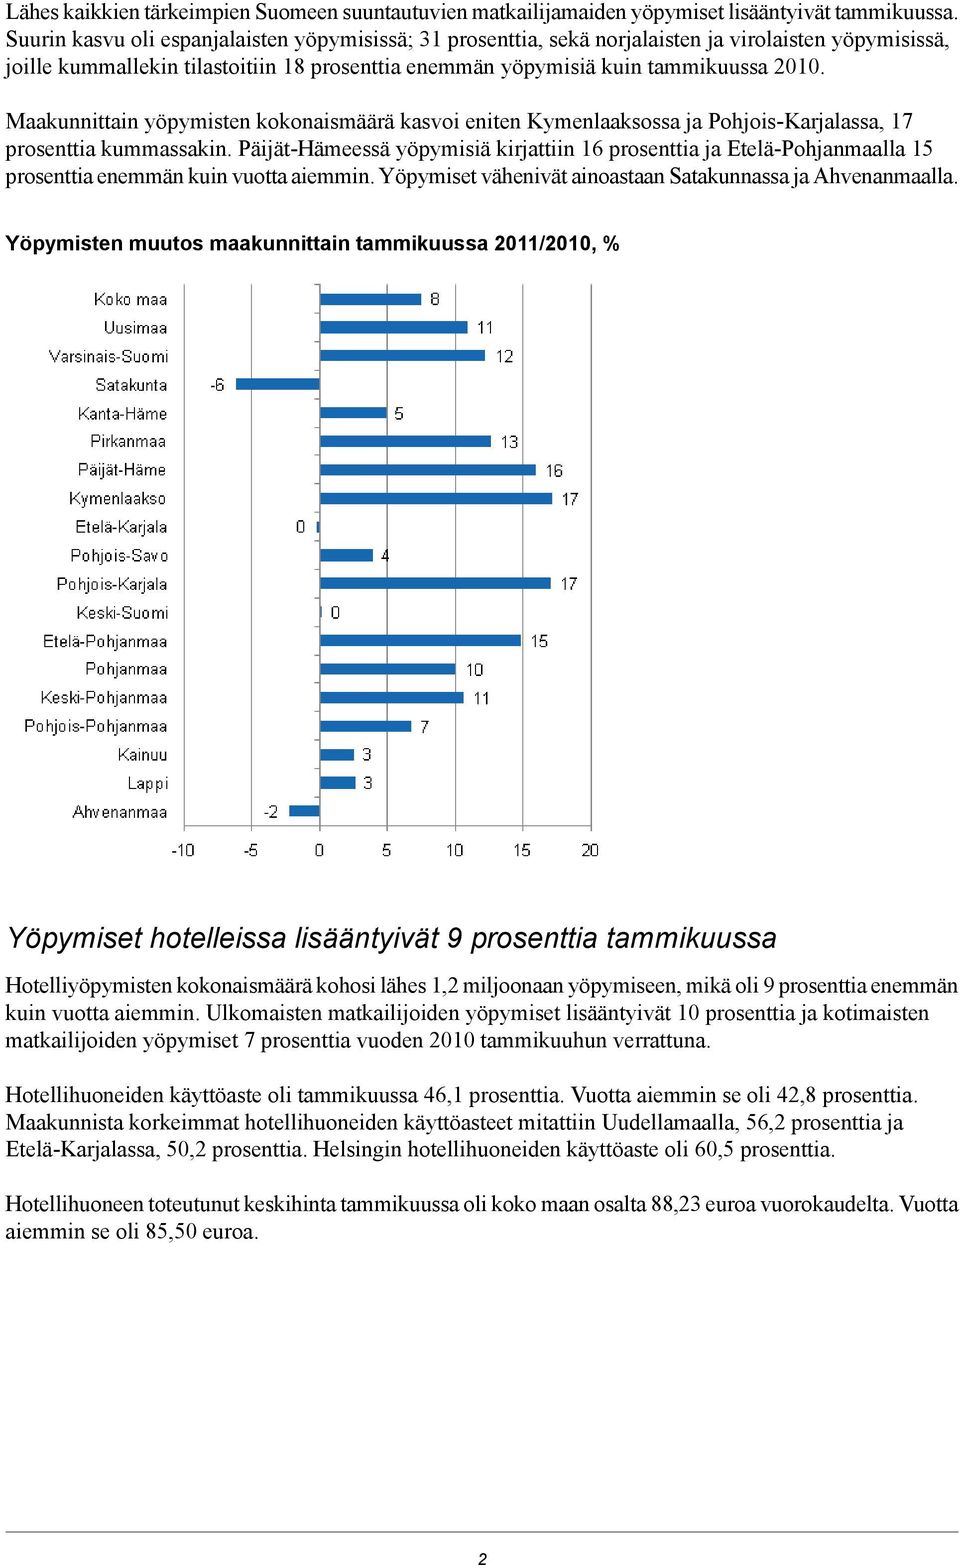 Maakunnittain yöpymisten kokonaismäärä kasvoi eniten Kymenlaaksossa ja Pohjois-Karjalassa, 17 prosenttia kummassakin.